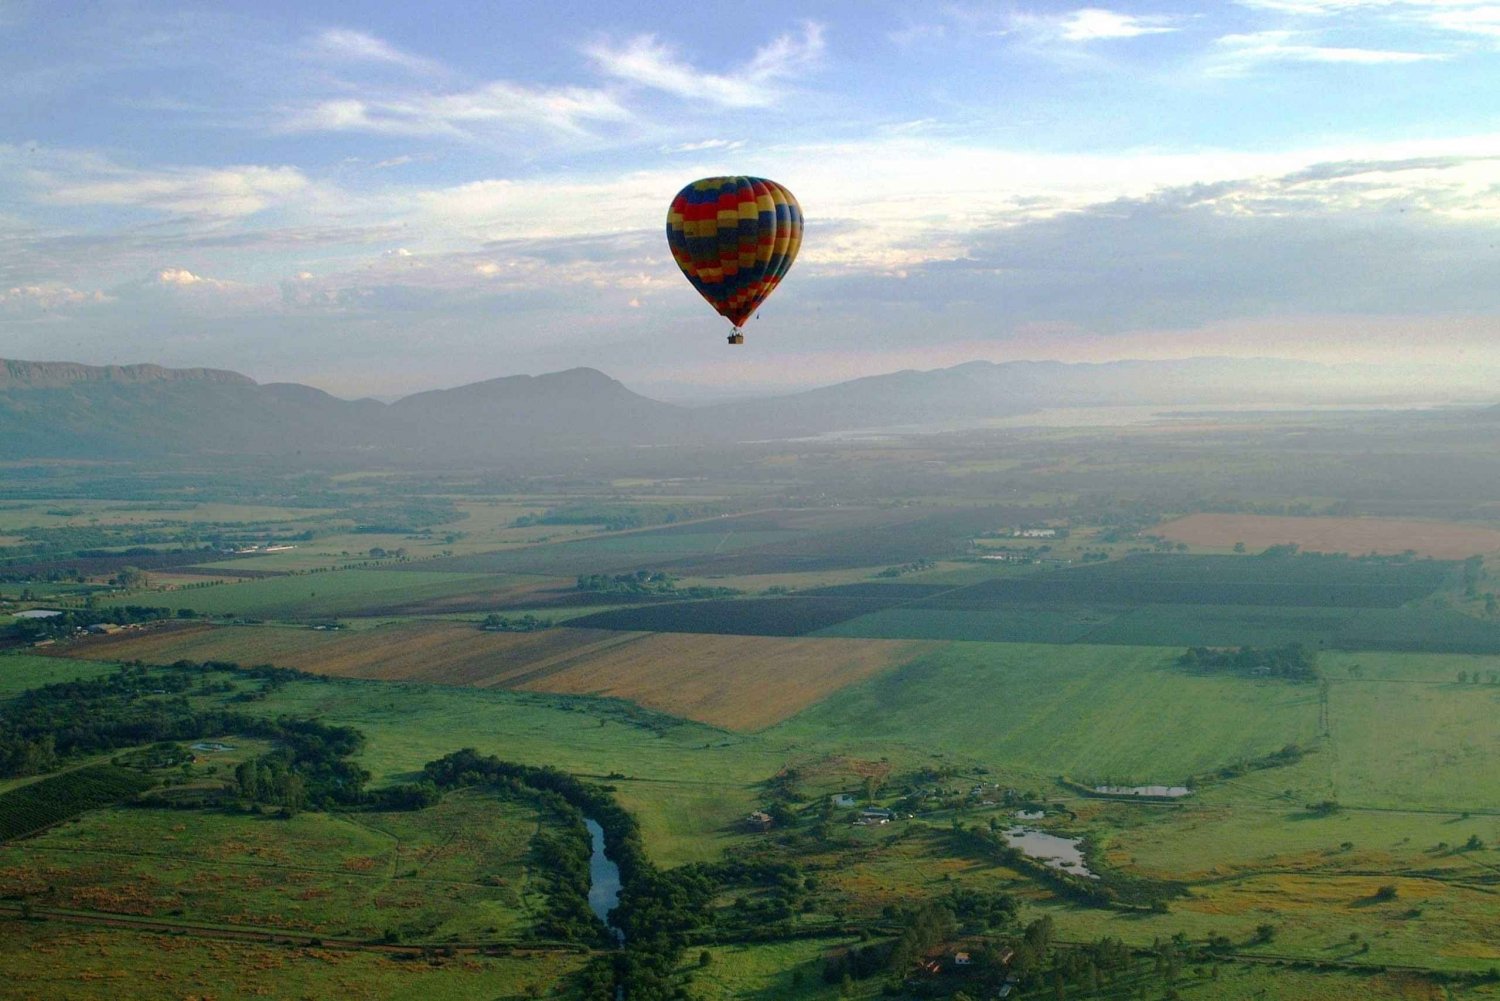 Johannesburg: Luftballonflyvning langs Magalies-dalen